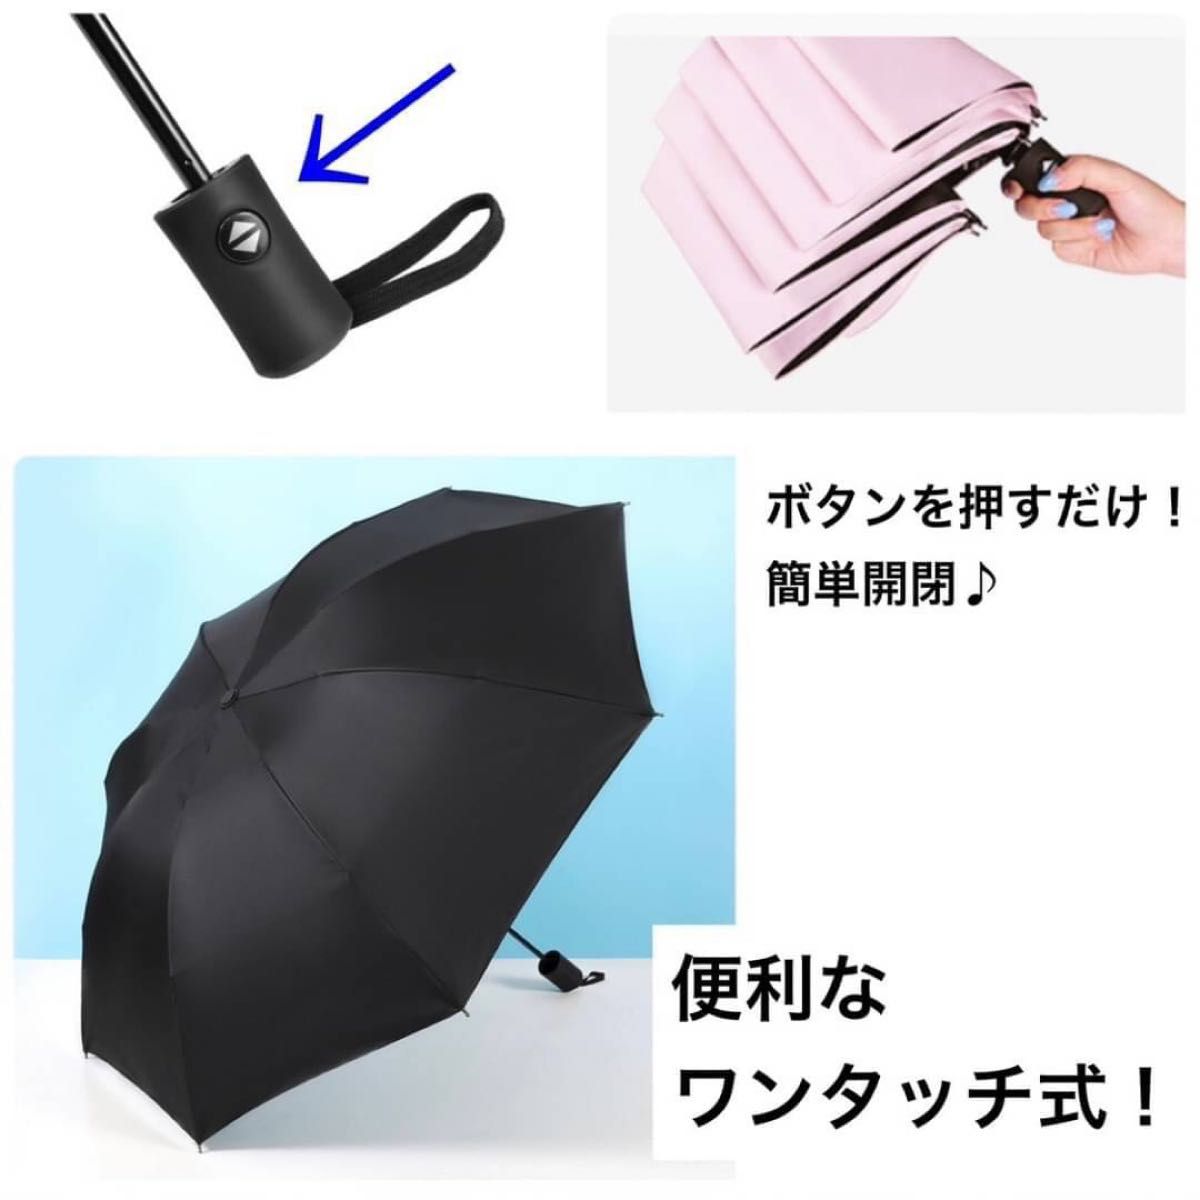 出群 日傘 折りたたみ傘 ワンタッチボタン式 折りたたみ日傘 ブラック